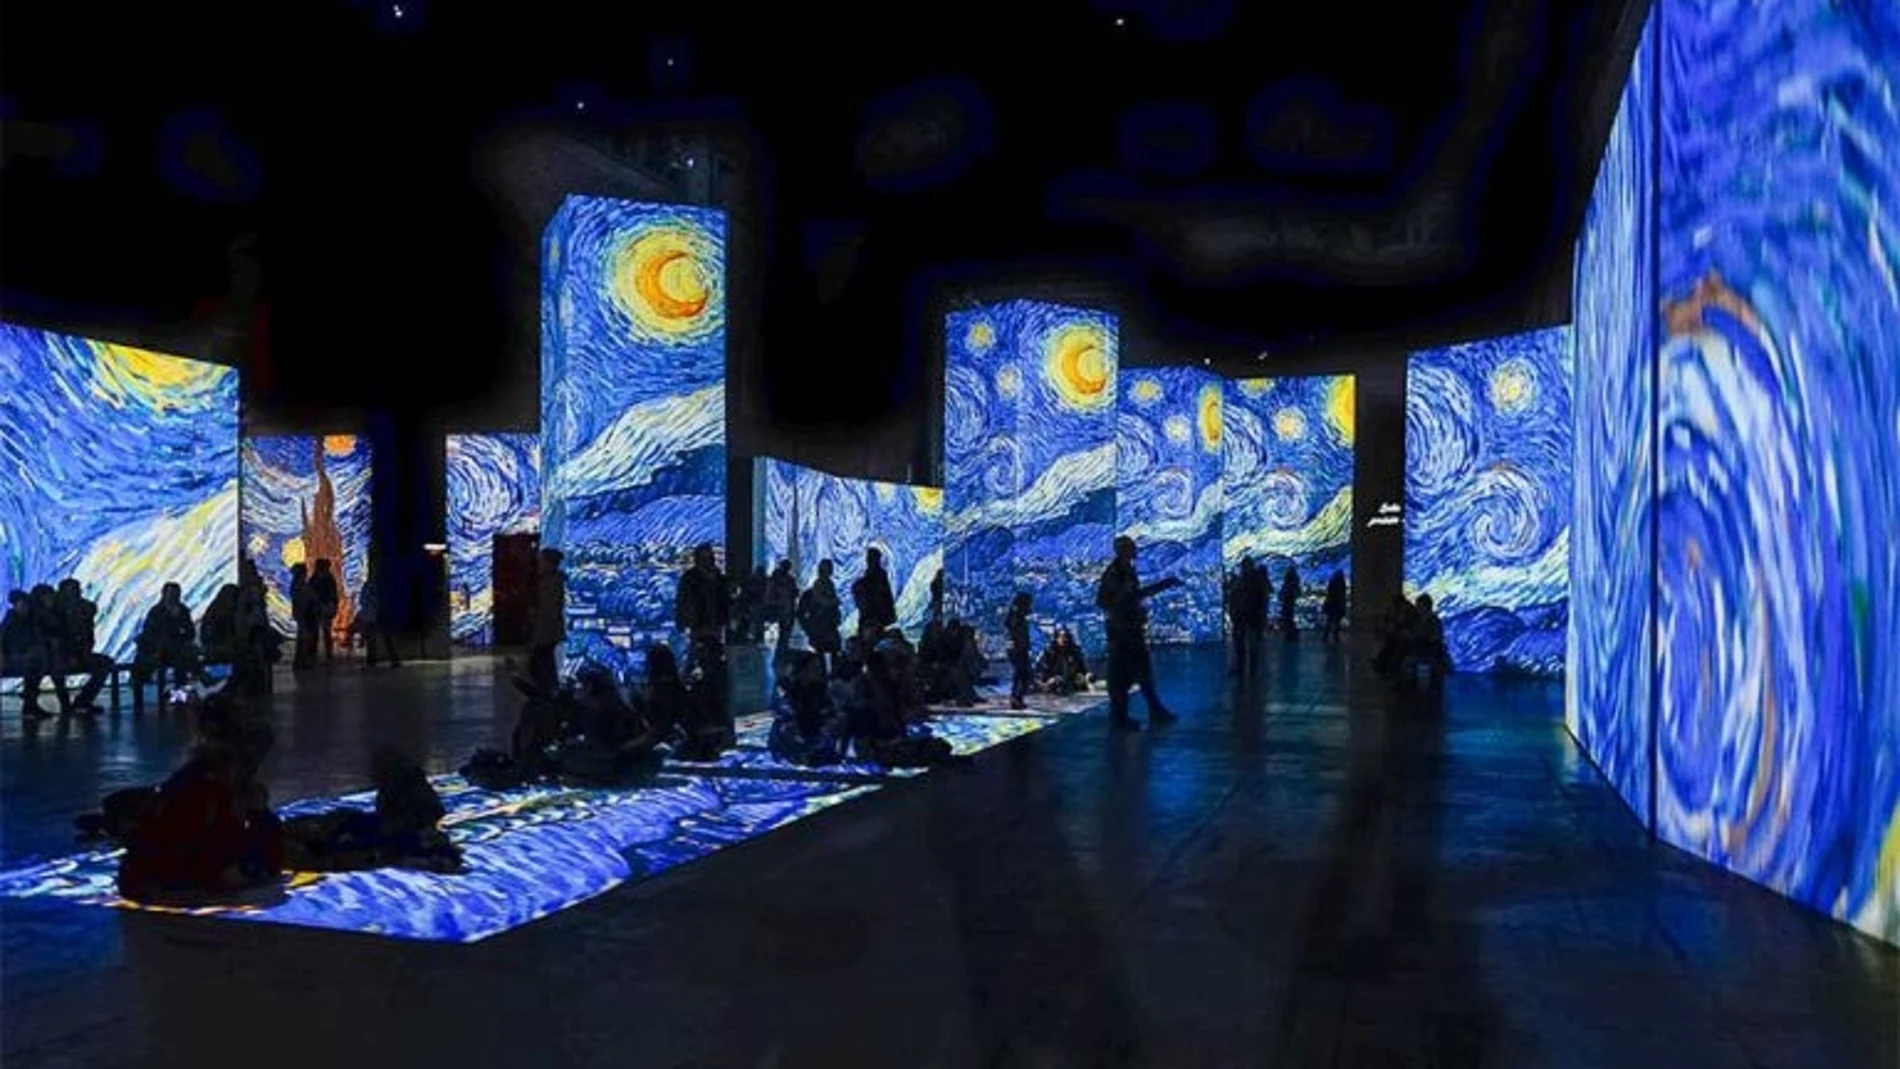 La exposición "Van Gogh Alive" en el Círculo de Bellas Artes, Madrid